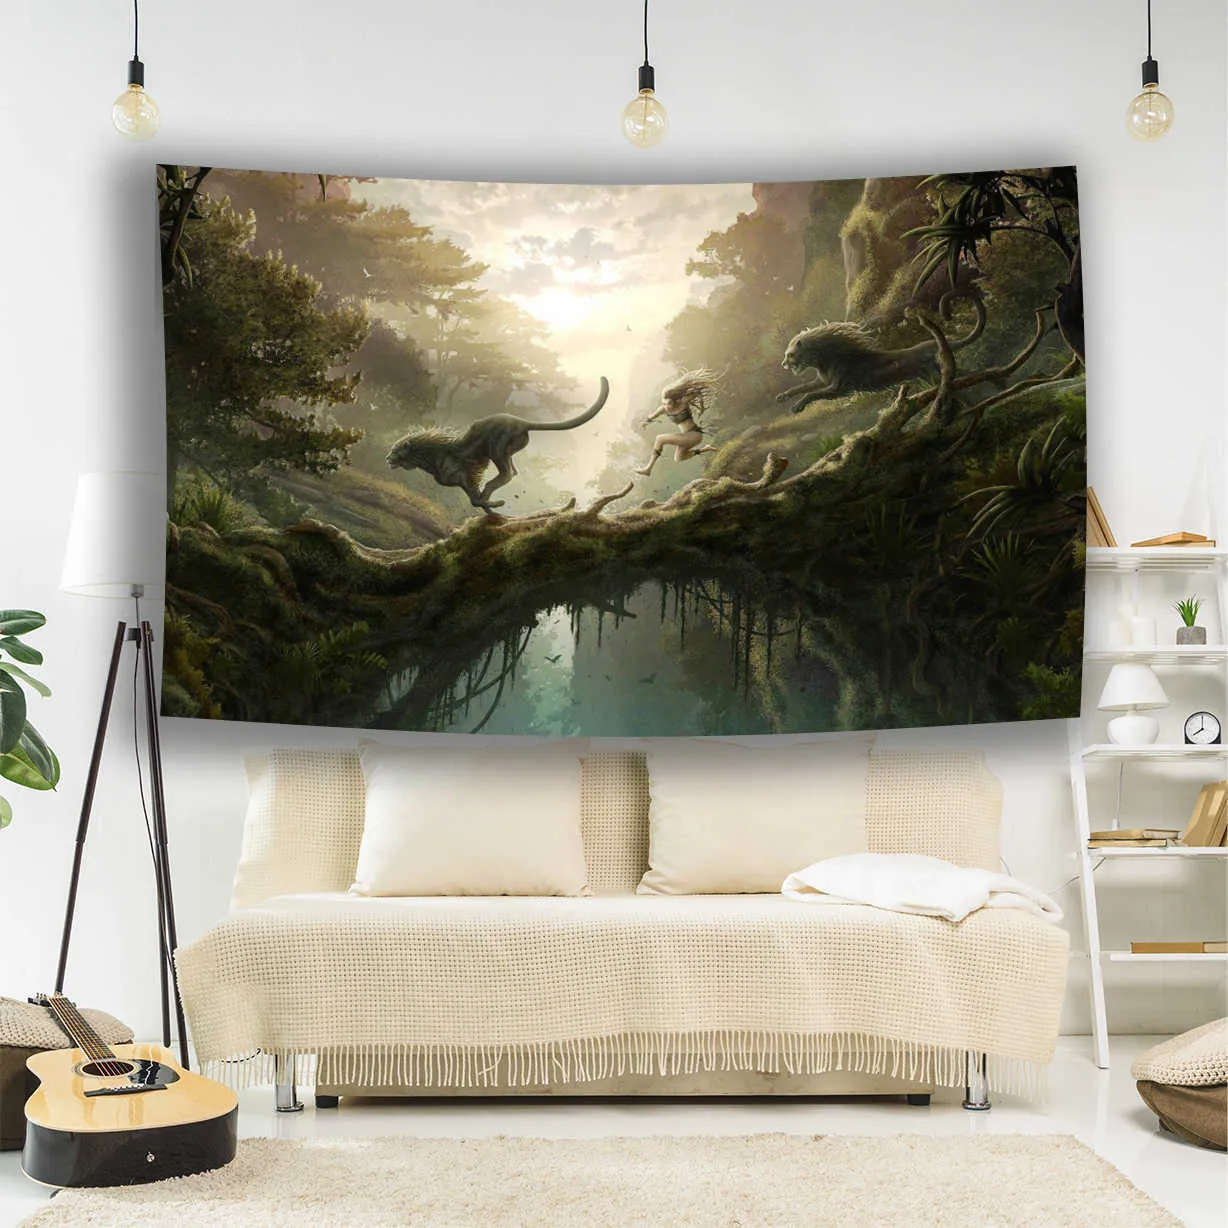 Gobeliny konfigurowalne fantastyczne światy fantasy magiczne naturalne krajobrazy animowane dekoracyjne ściany gobeliny